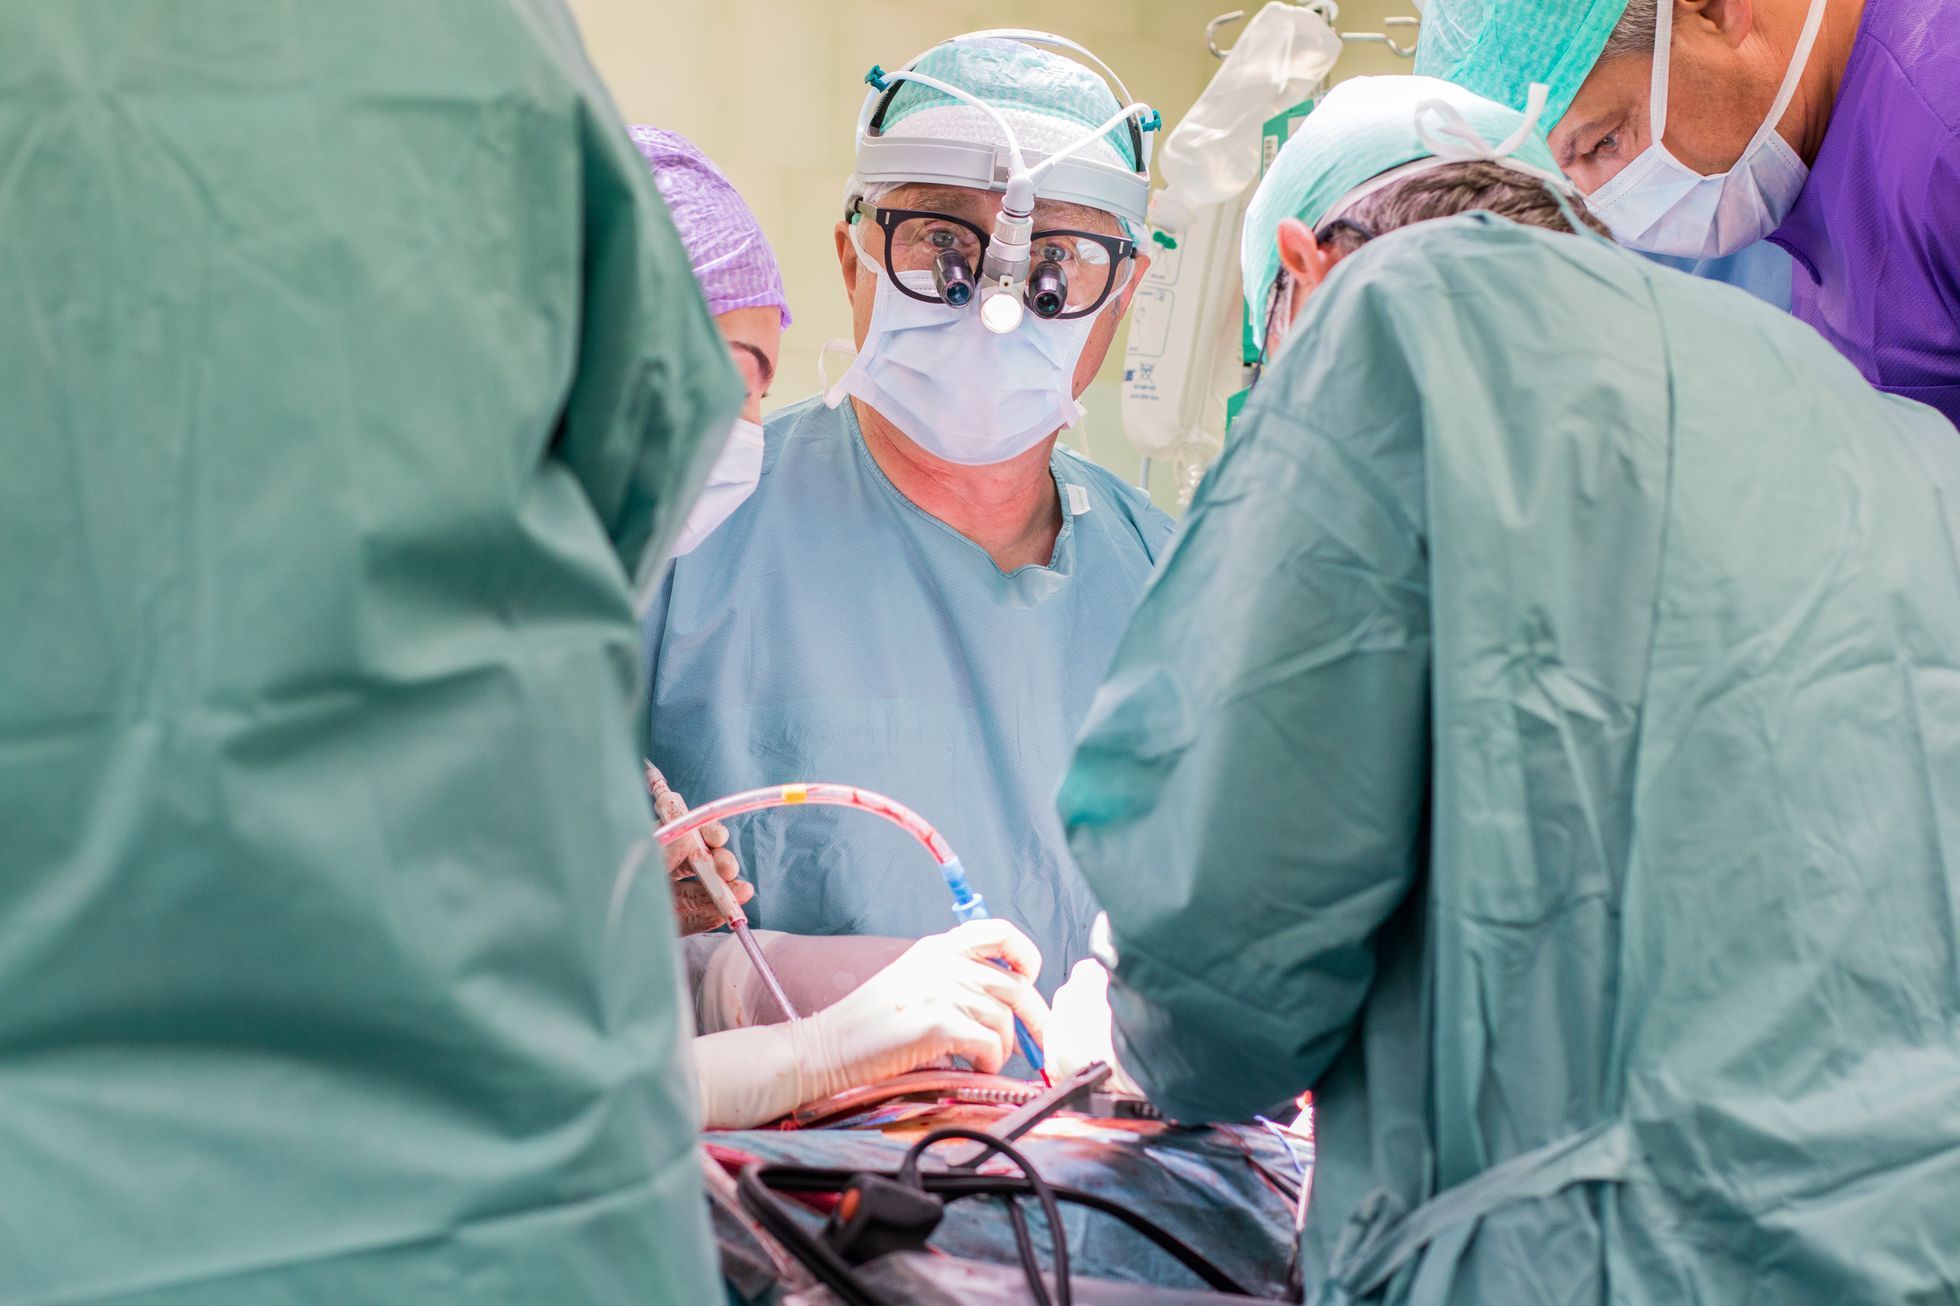 Motol kardiovaskulární chirurgie operace aorty